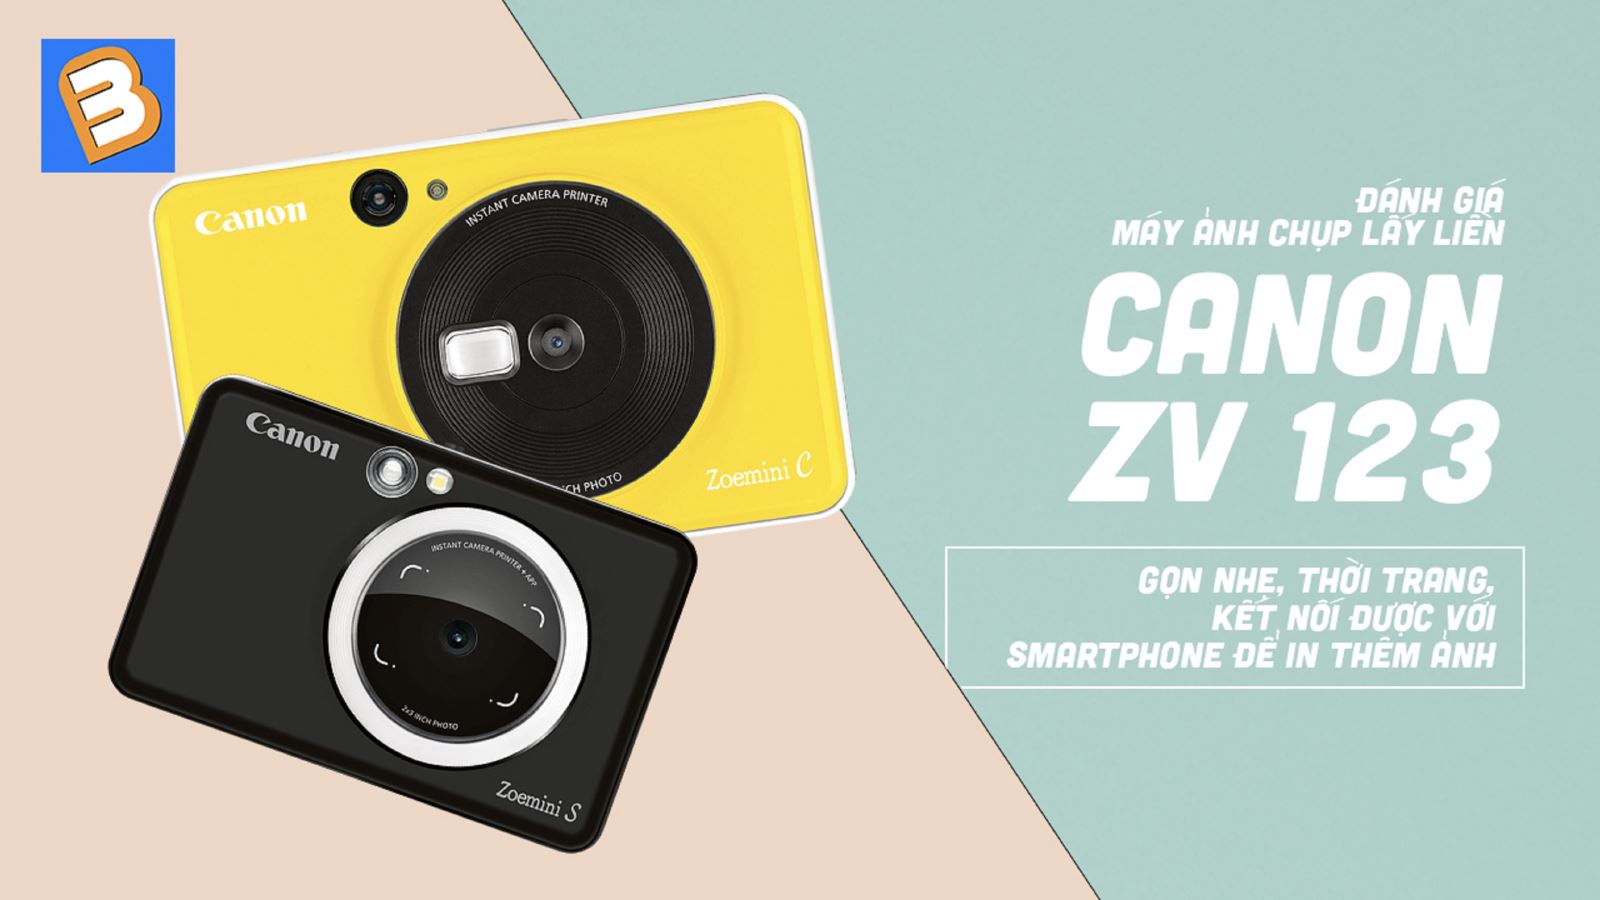 Đánh giá máy ảnh chụp lấy liền Canon ZV123: gọn nhẹ, thời trang, kết nối được với smartphone để in thêm ảnh